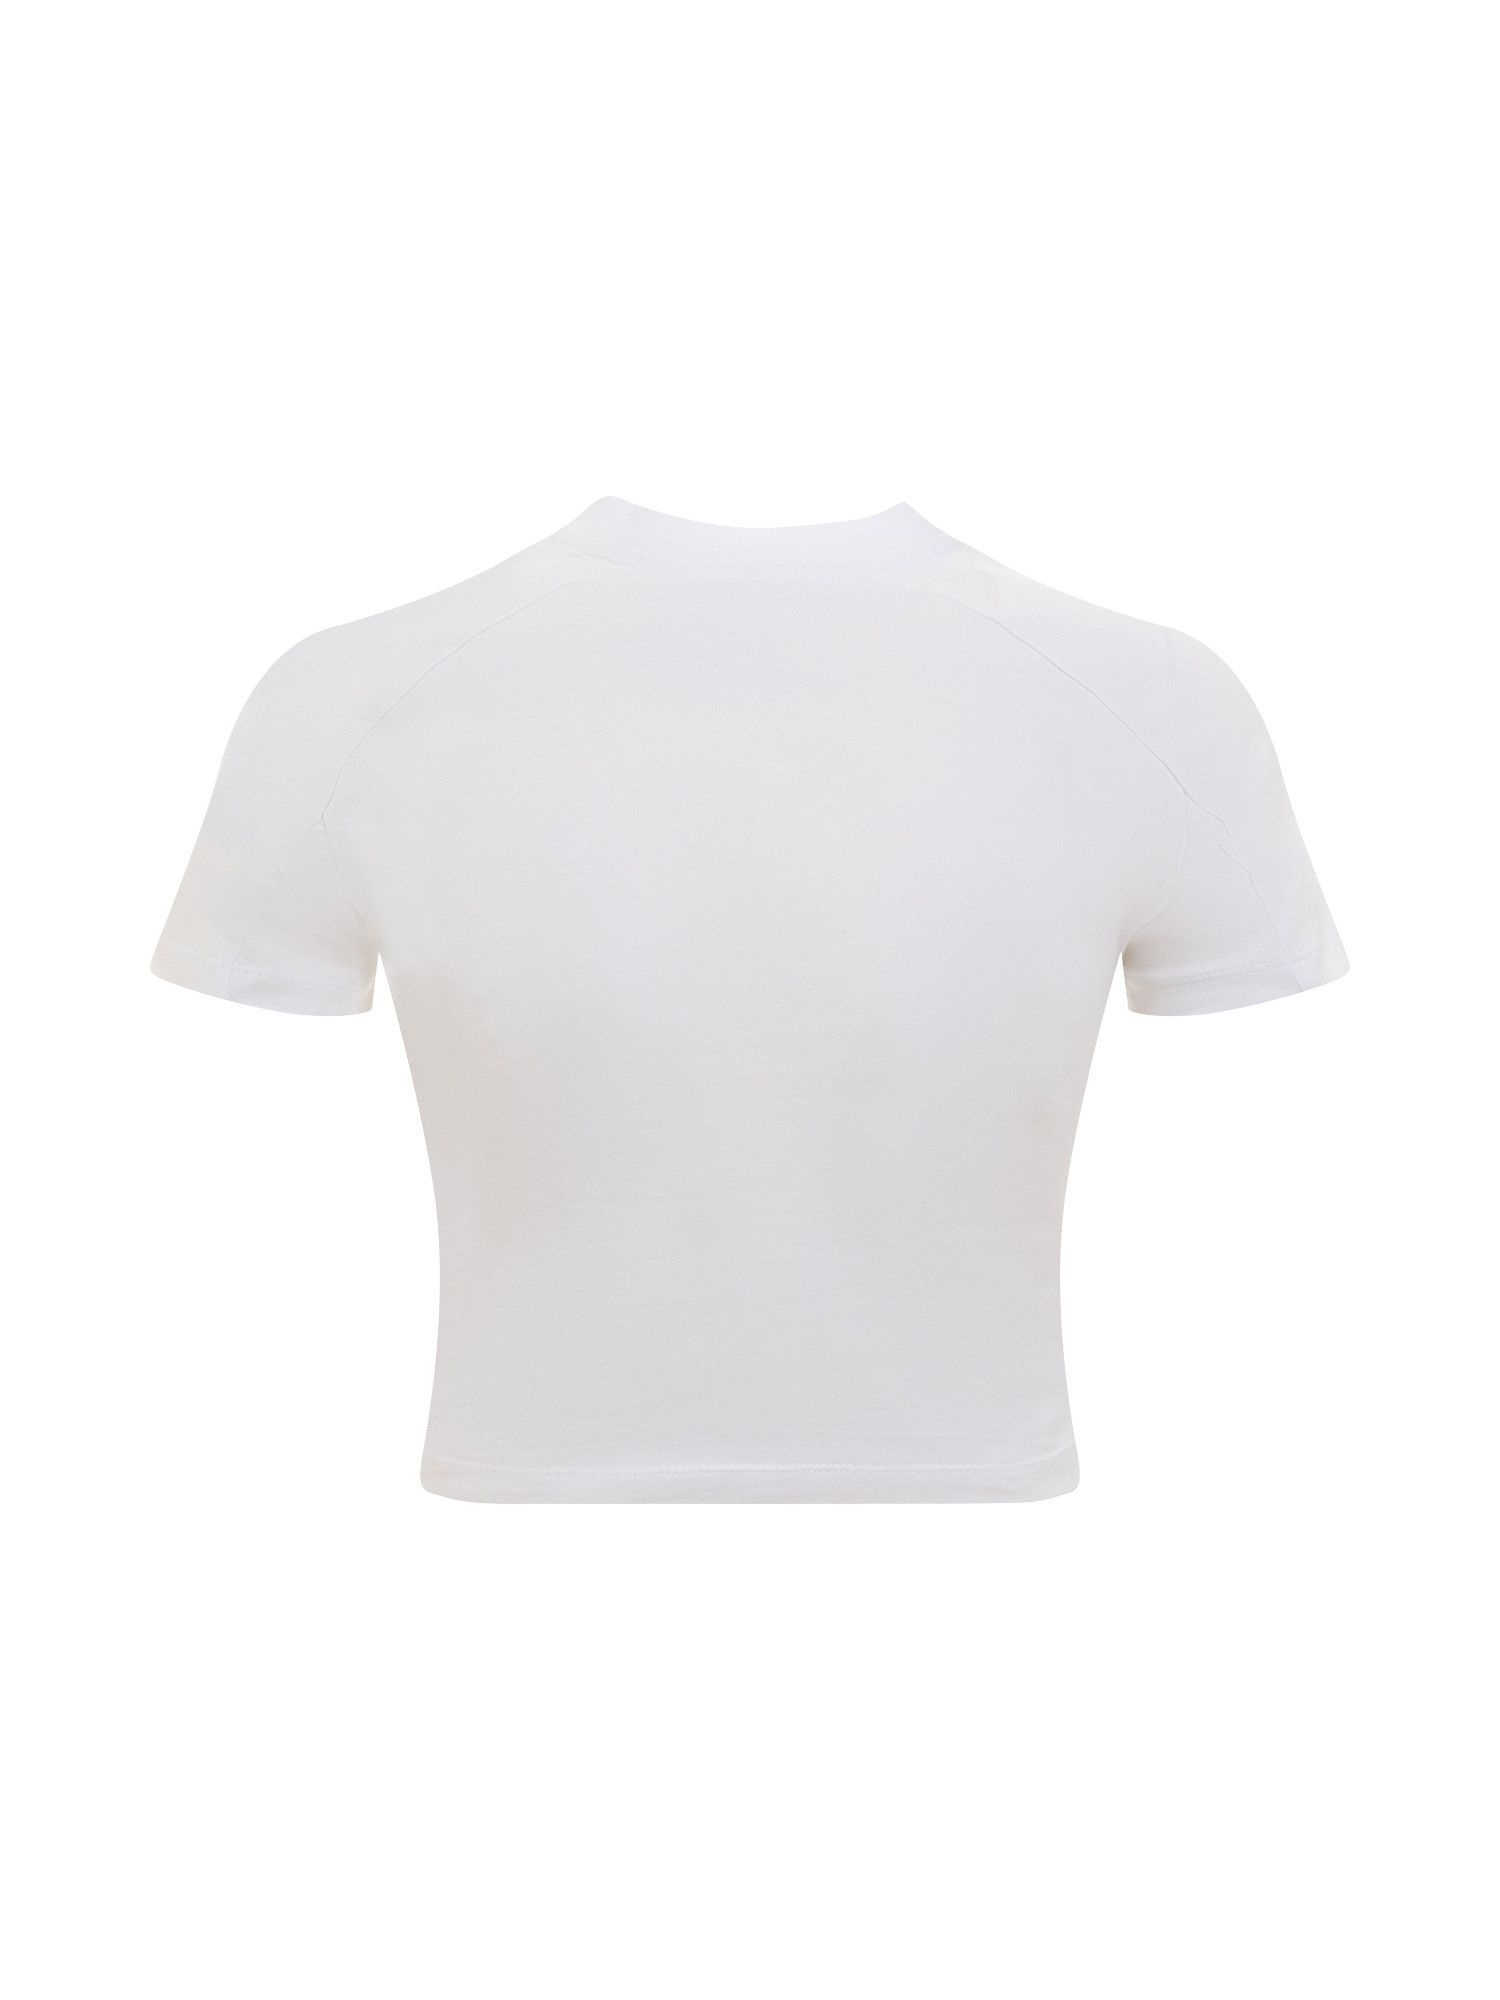 Chiara Ferragni - T-shirt cropped con stampa logo, Bianco, large image number 1